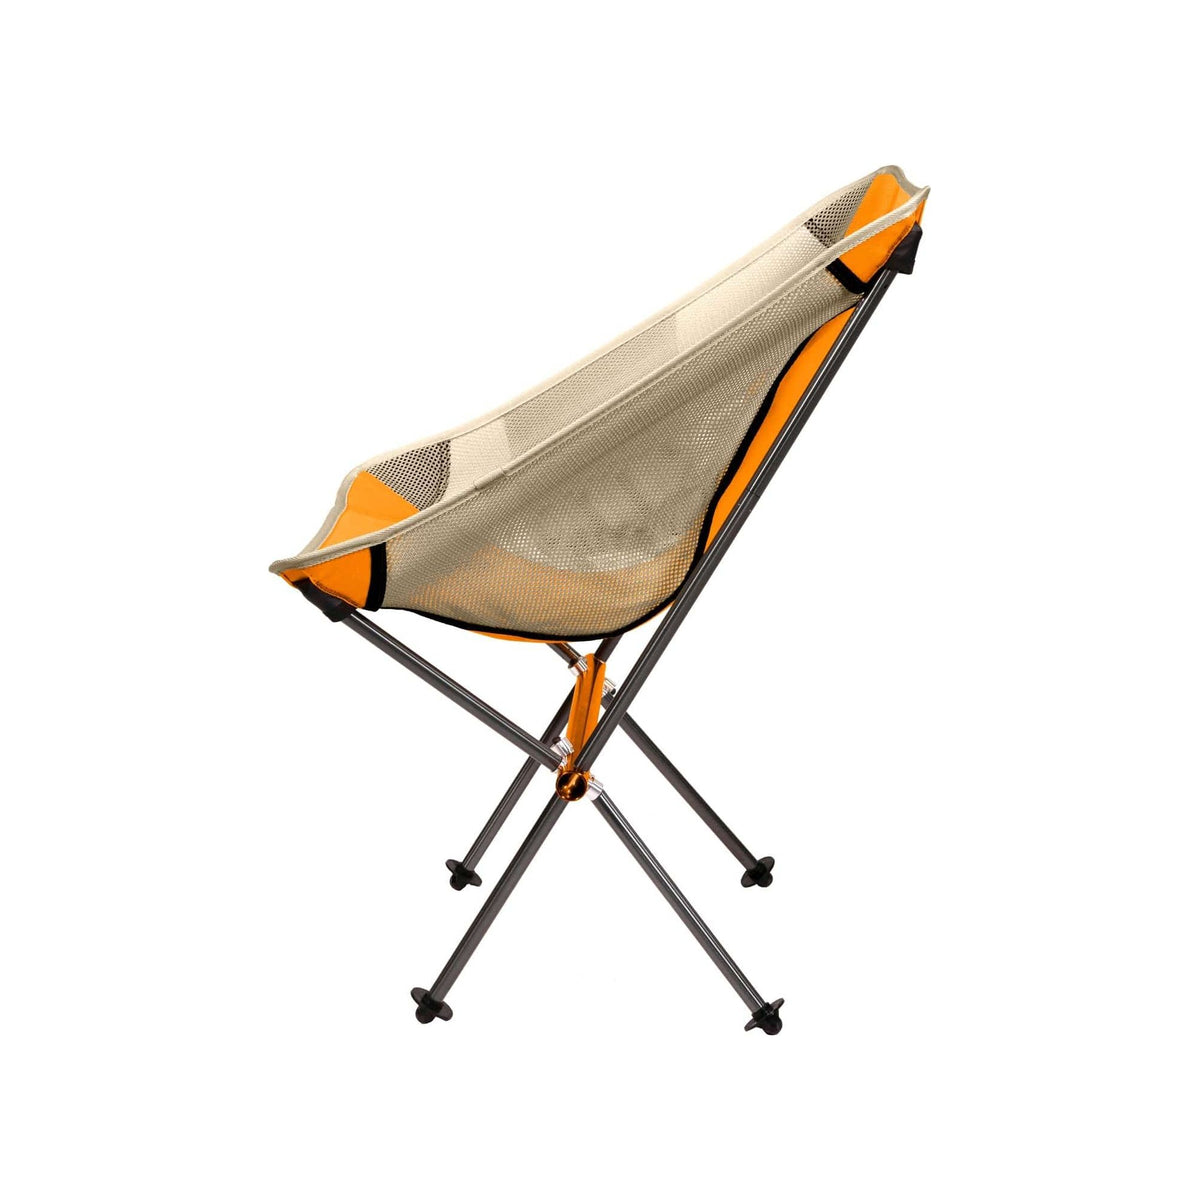 Klymit Ridgeline Camp Chair Short by Klymit